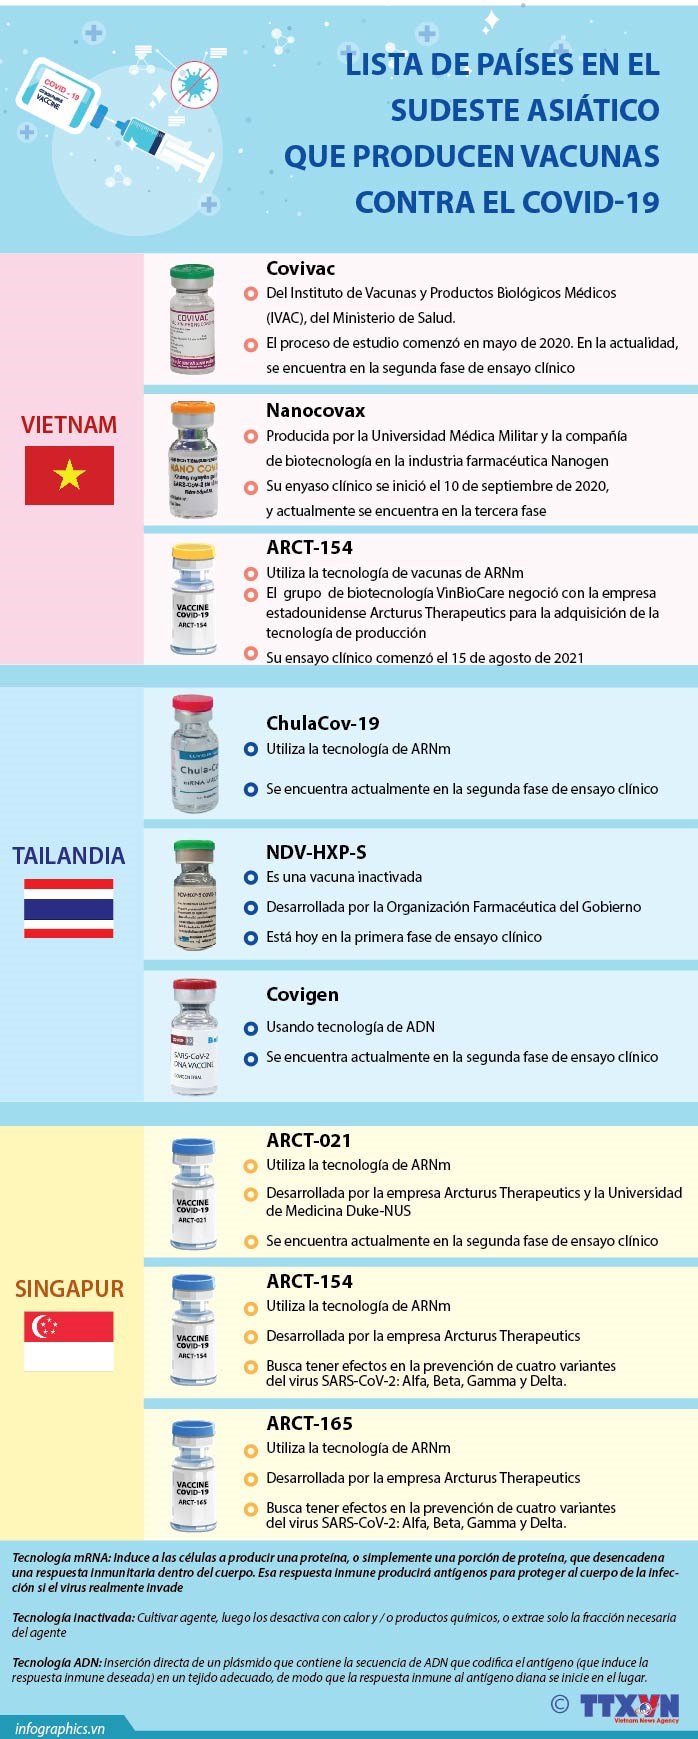 Lista de paises productores de vacunas contra el COVID-19 en el Sudeste Asiatico hinh anh 1